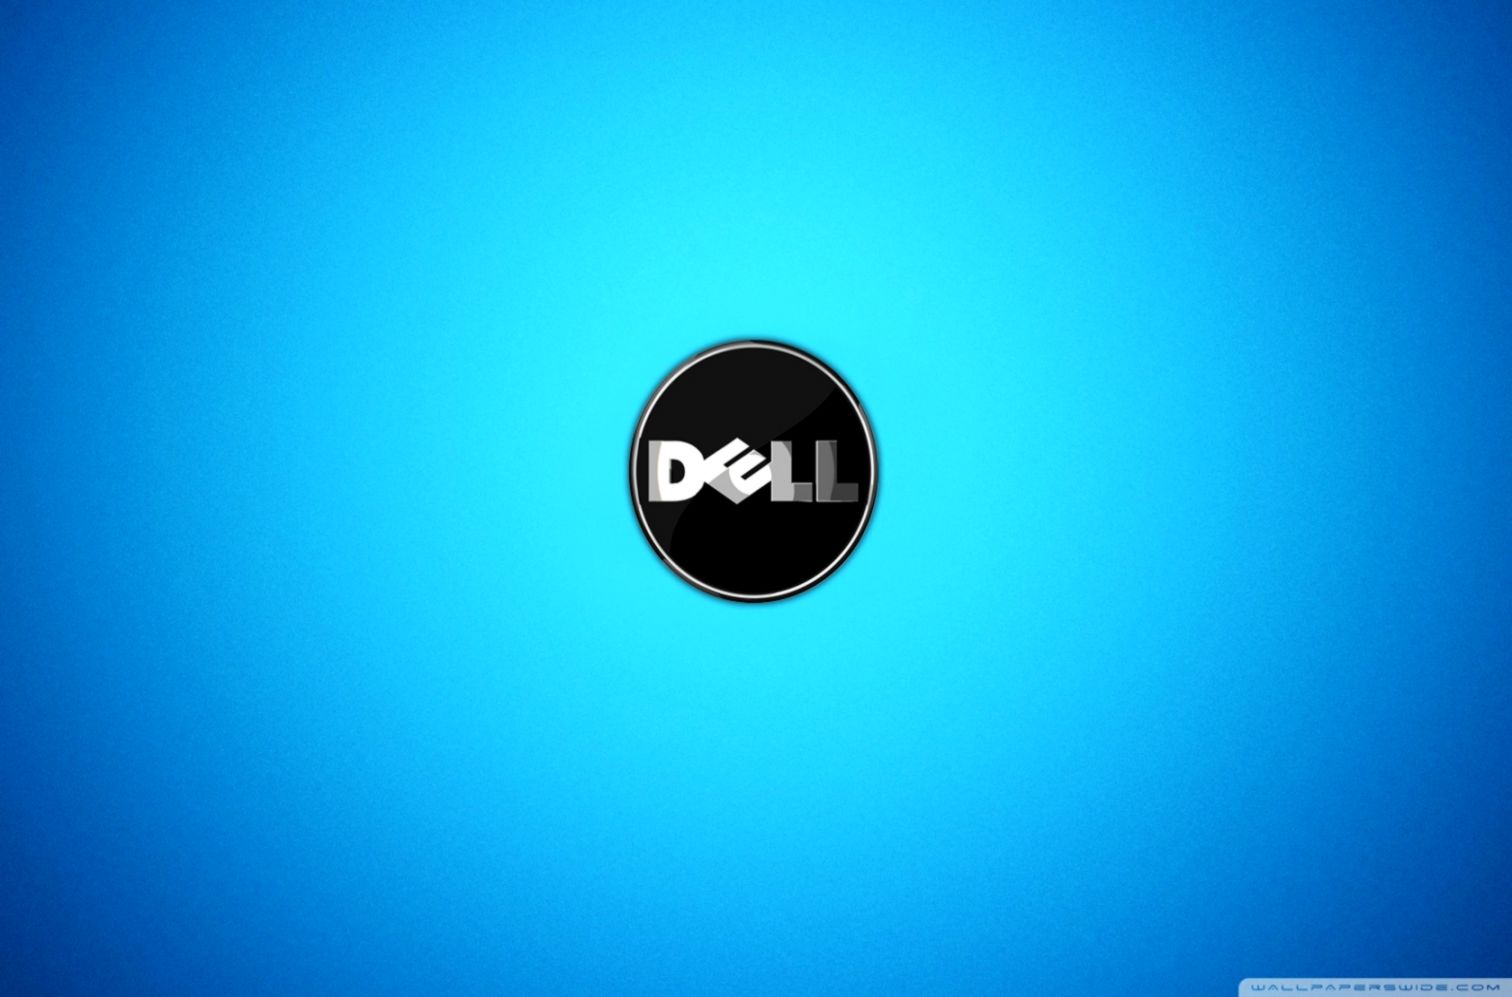 Dell Desktop Wallpaper Up